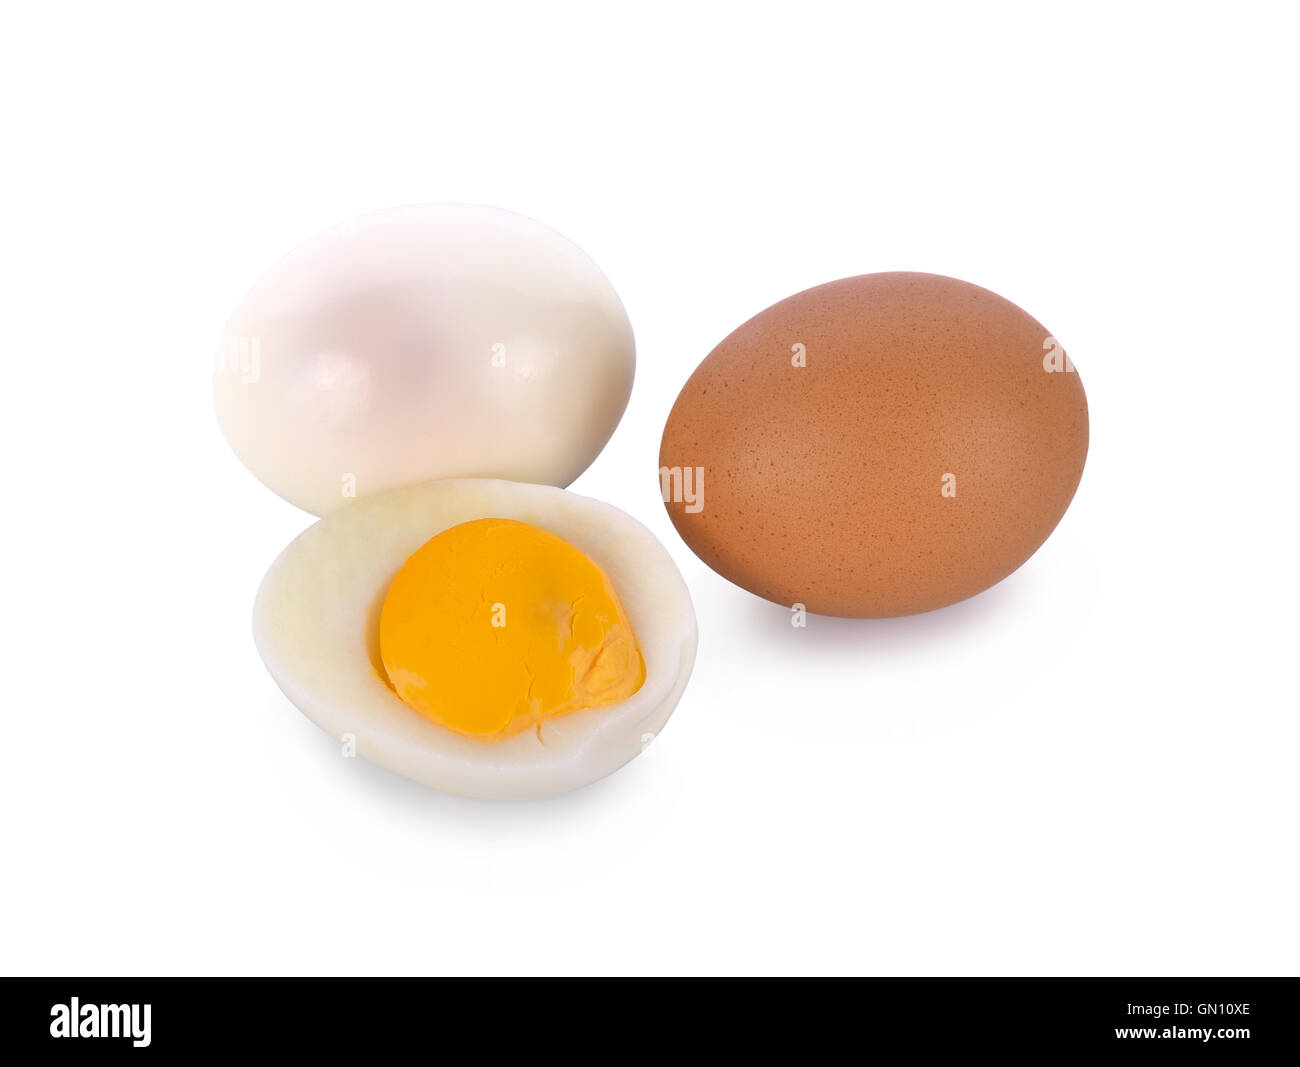 Boiled egg isolated on white background Stock Photo